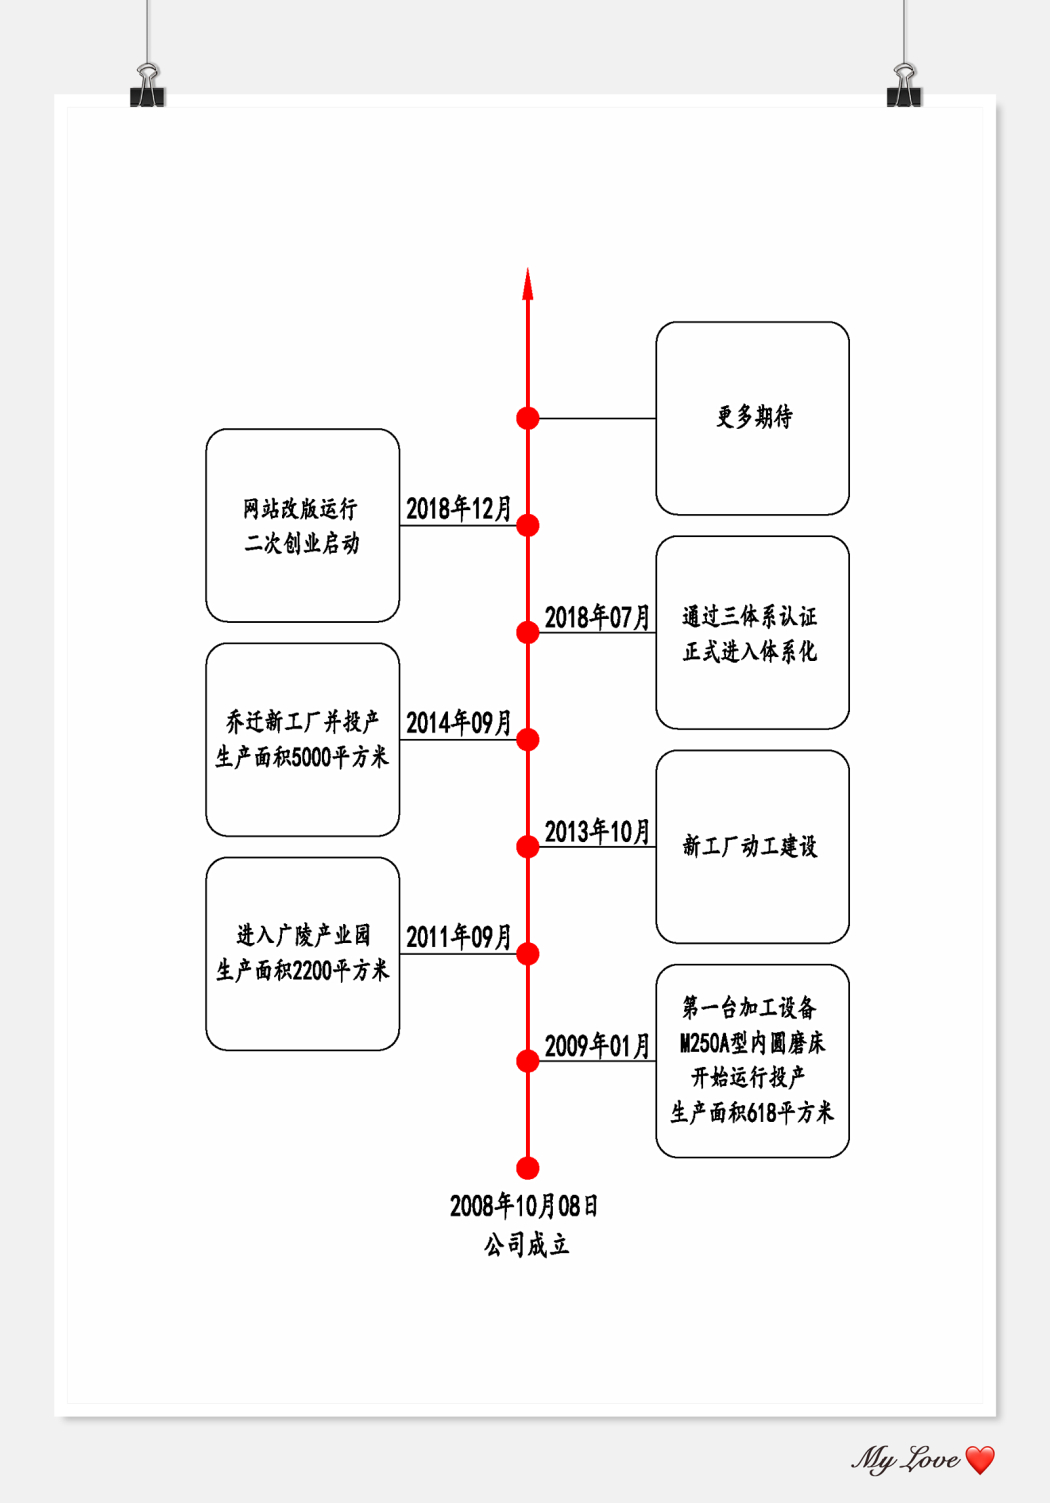 企業發展歷程-中文-紅色.jpg